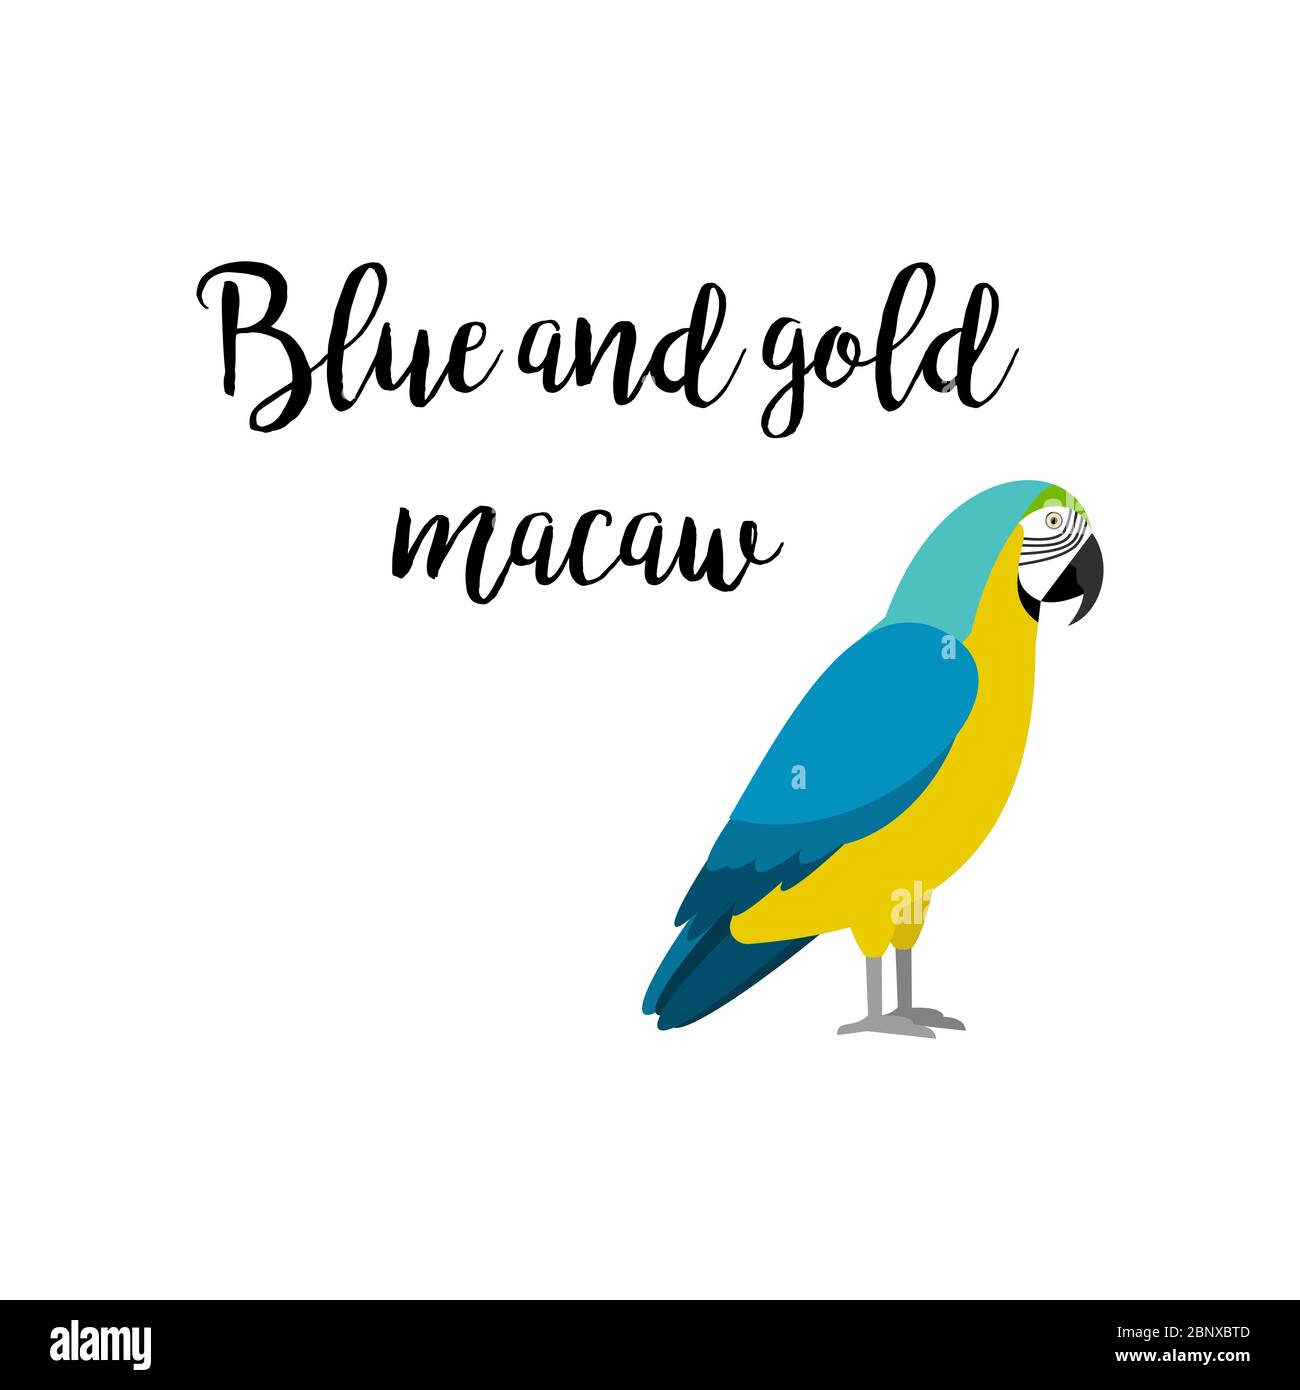 Oiseau tropical exotique isolé sur fond blanc. Élément vecteur d'oiseau perroquet bleu et or avec inscription à la main Illustration de Vecteur